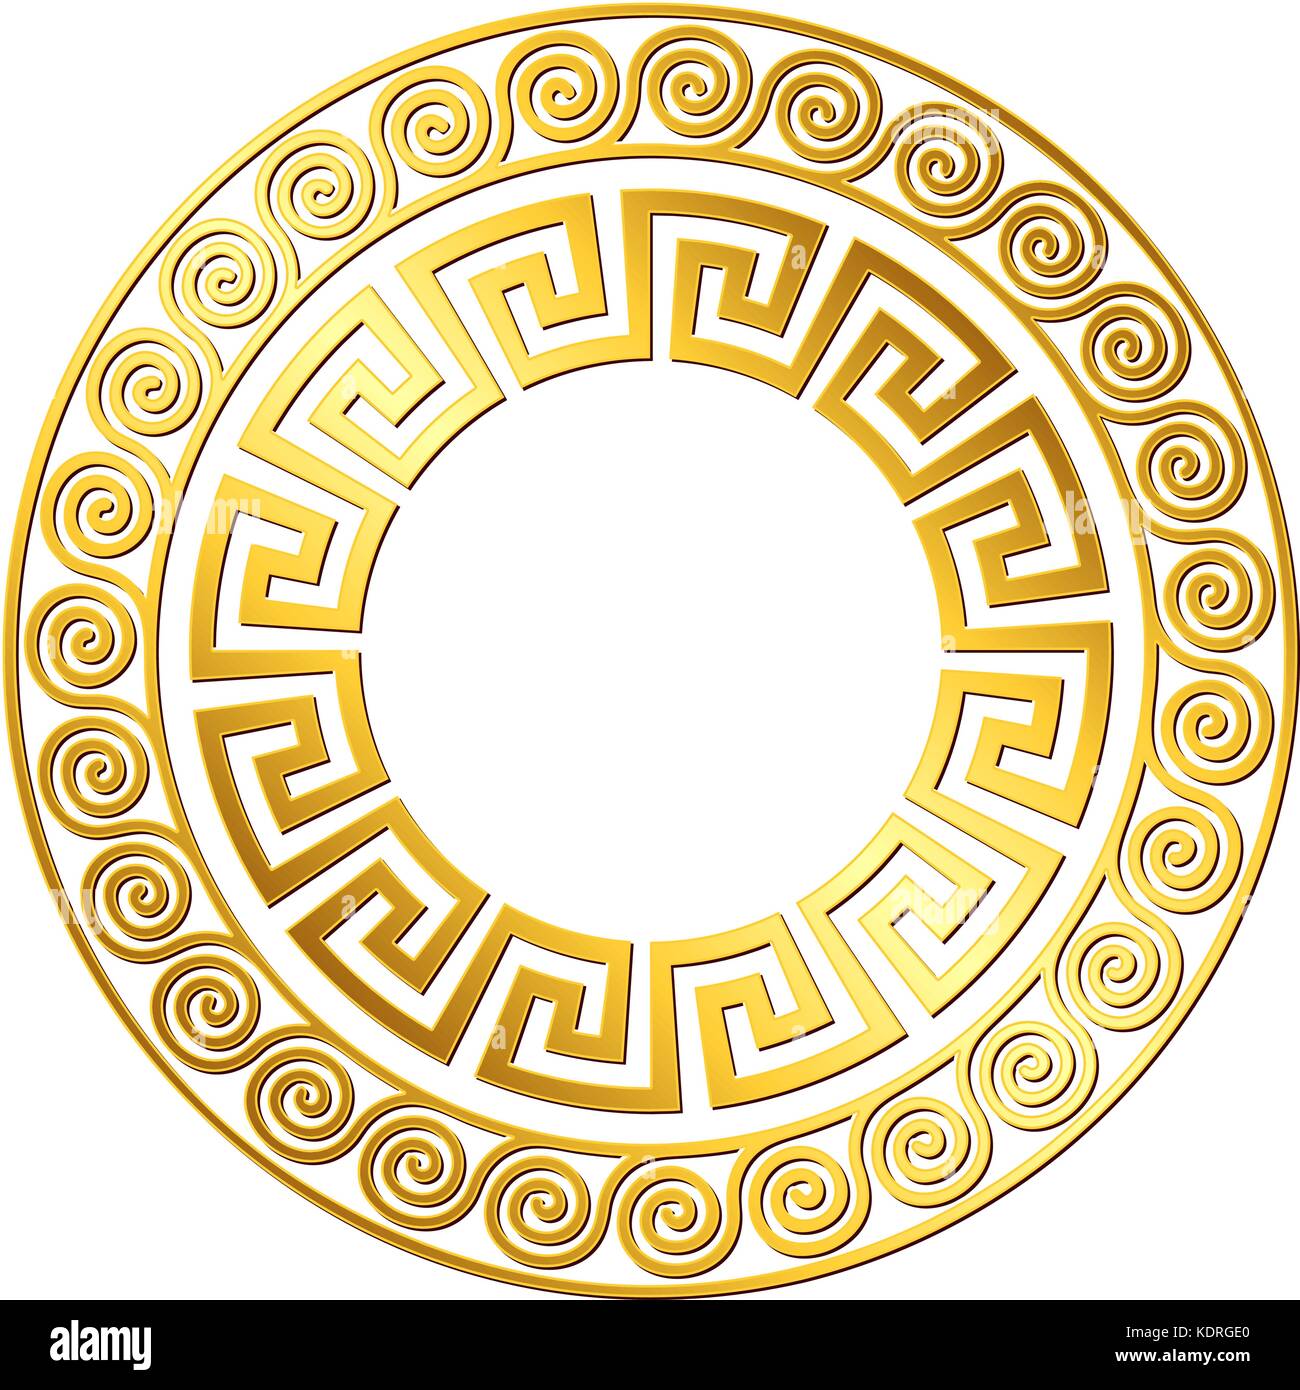 Traditional vintage gold Greek ornament, Meander Stock Vector Image ...